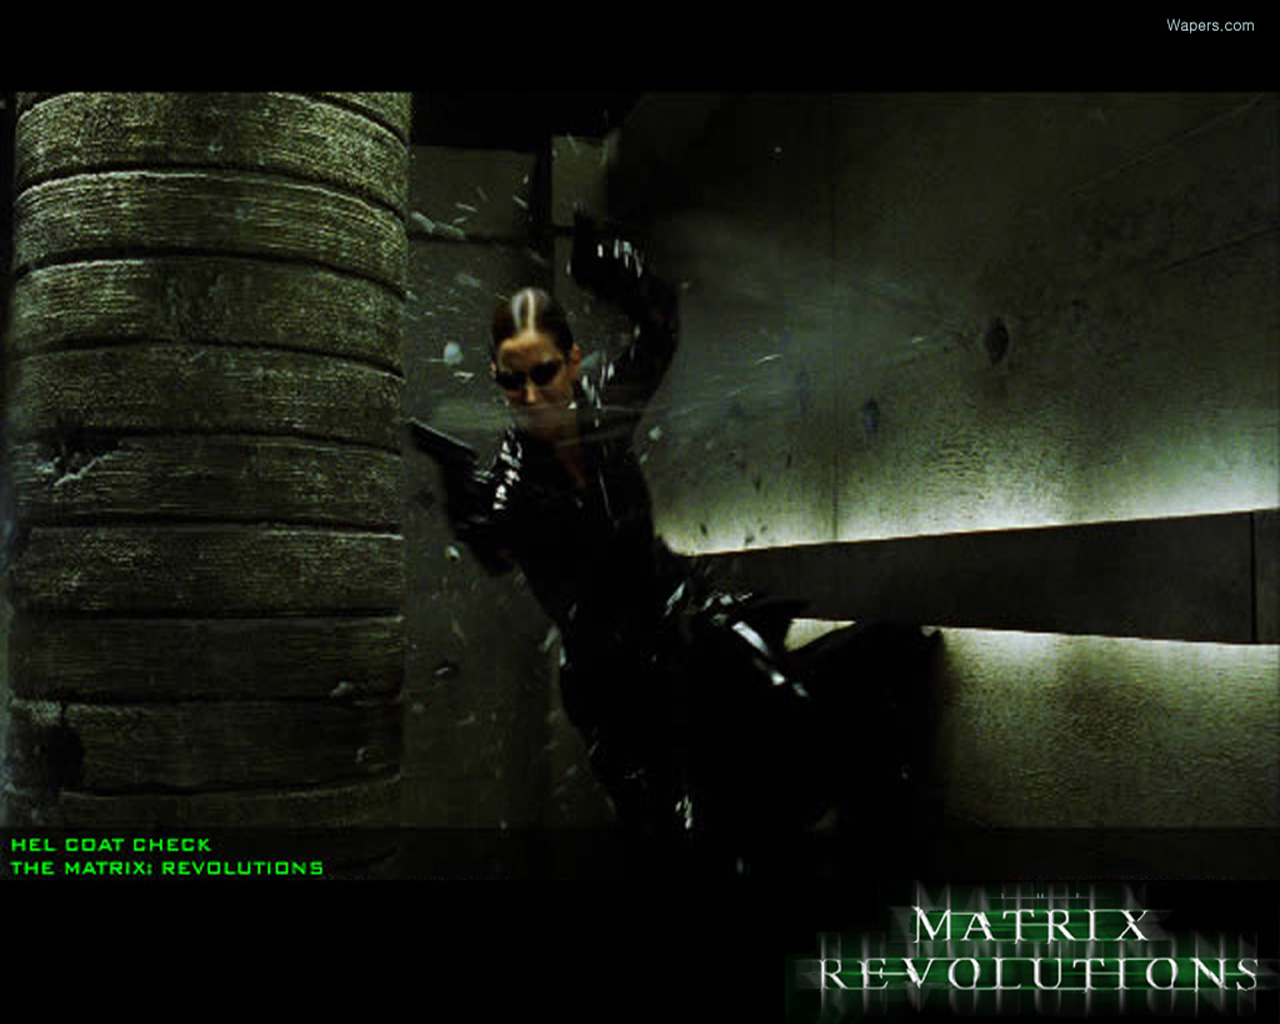 Matrix Revolutions Wallpaper Pictures Photos